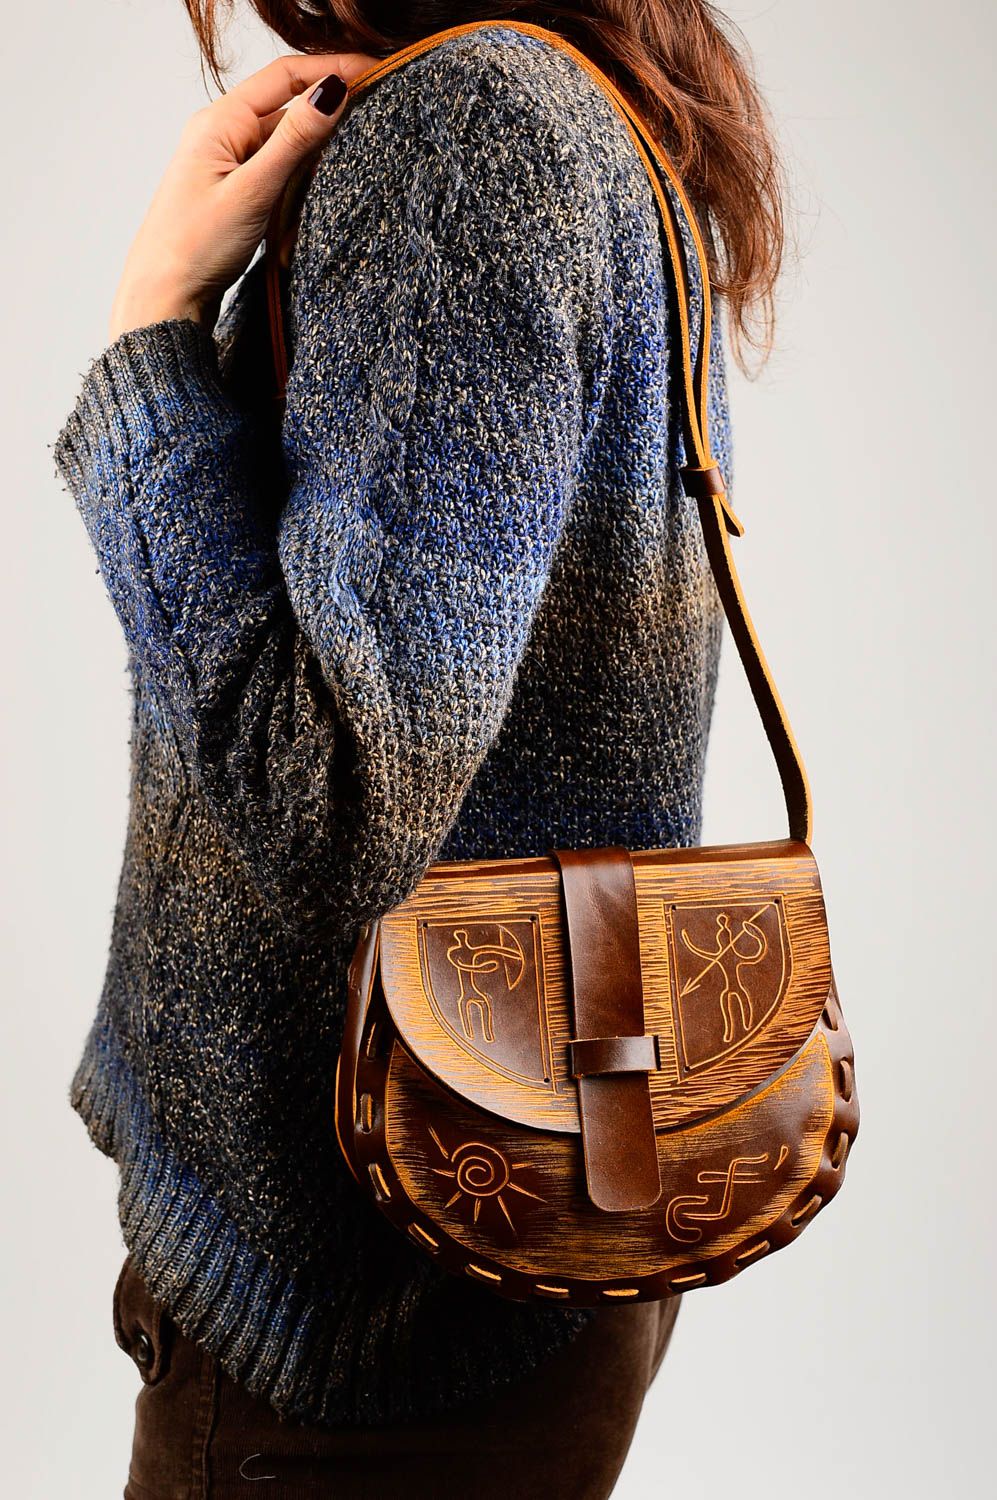 Сумка ручной работы сумка на плечо авторская кожаная сумка для женщин стильная фото 2